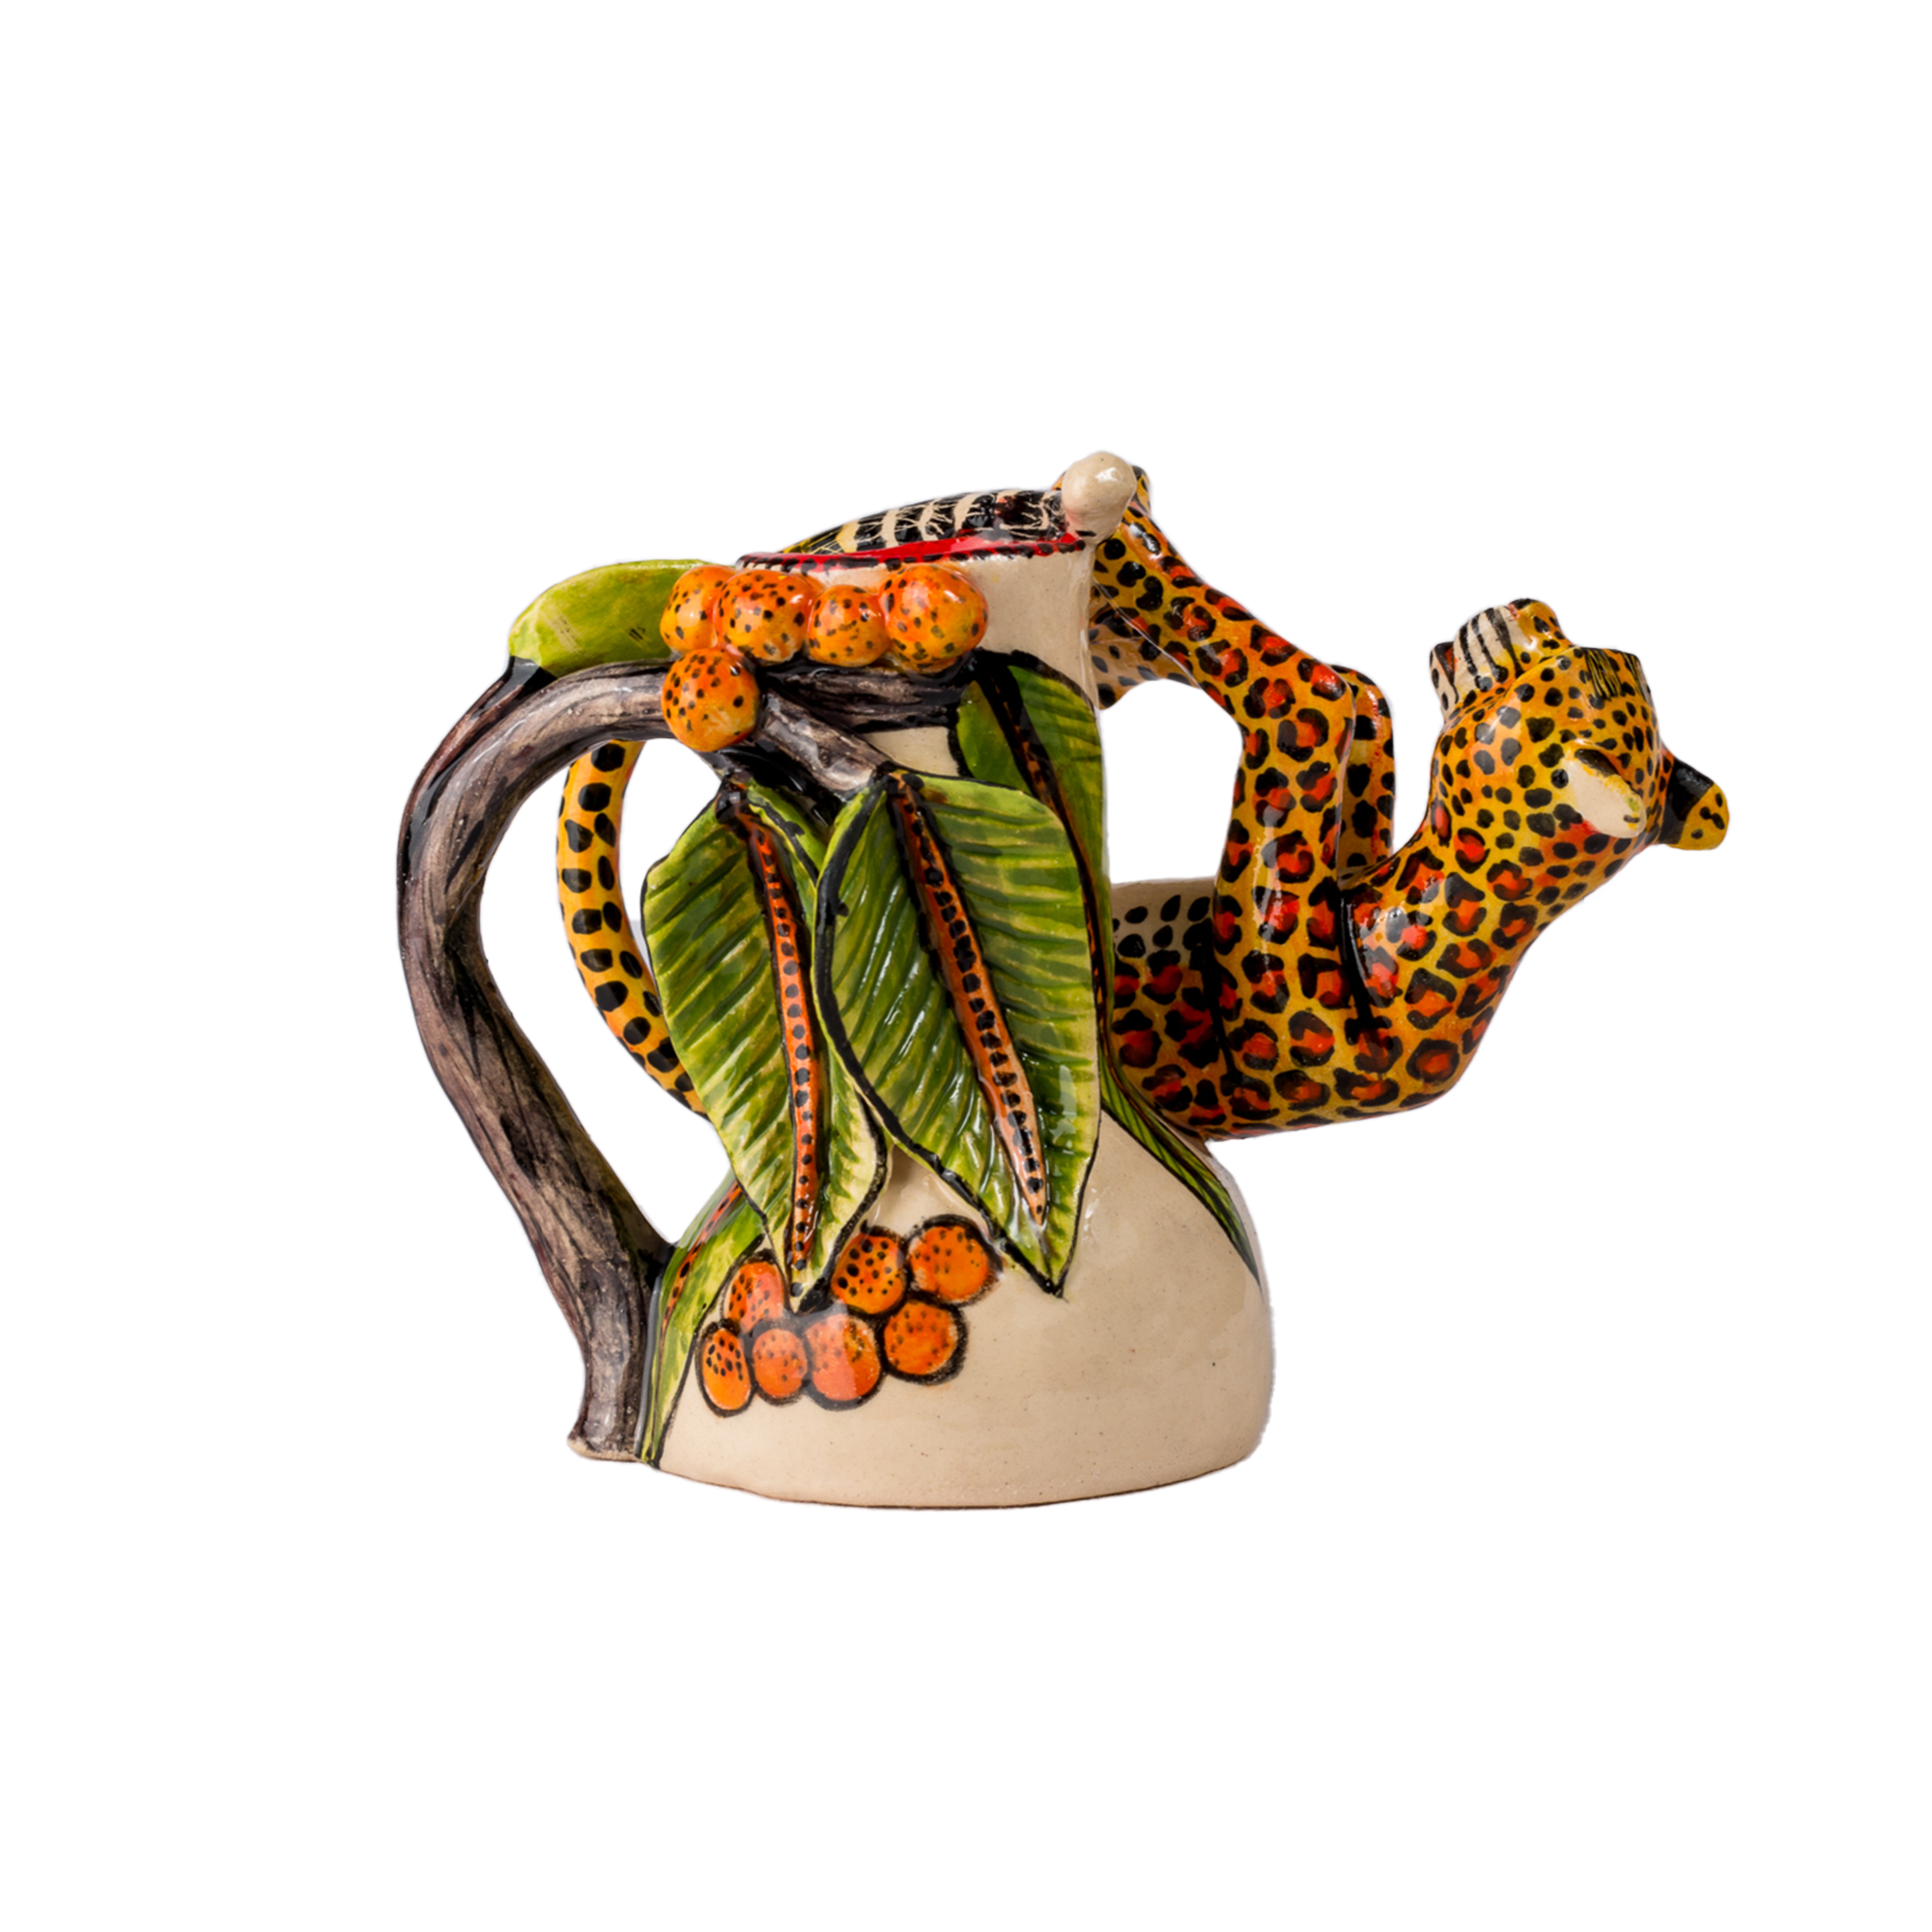 3D Ceramic Leopard Candle Holder